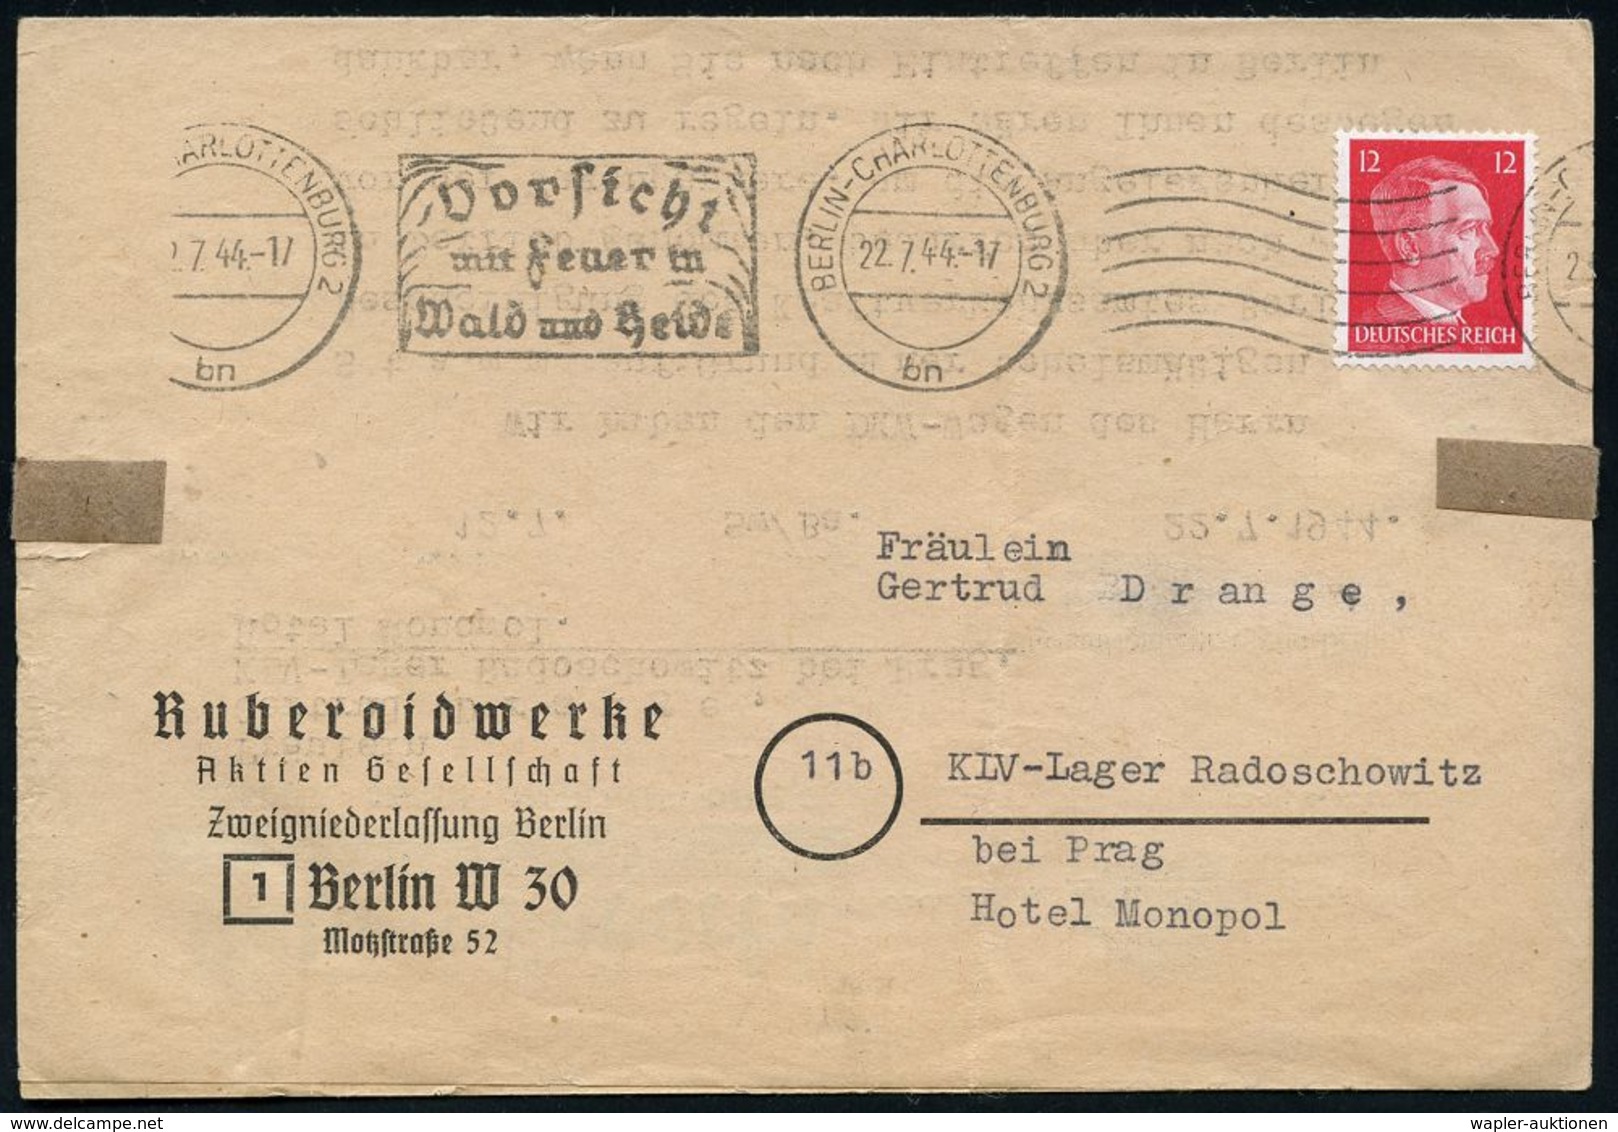 II. WELTKRIEG (1939 - 1945) : BERLIN-CHARLOTTENBURG 2/ Bn/ Vorsicht/ Mit Feuer In/ Wald U.Heide 1944 (22.7.) Bd.MWSt + 6 - WW2